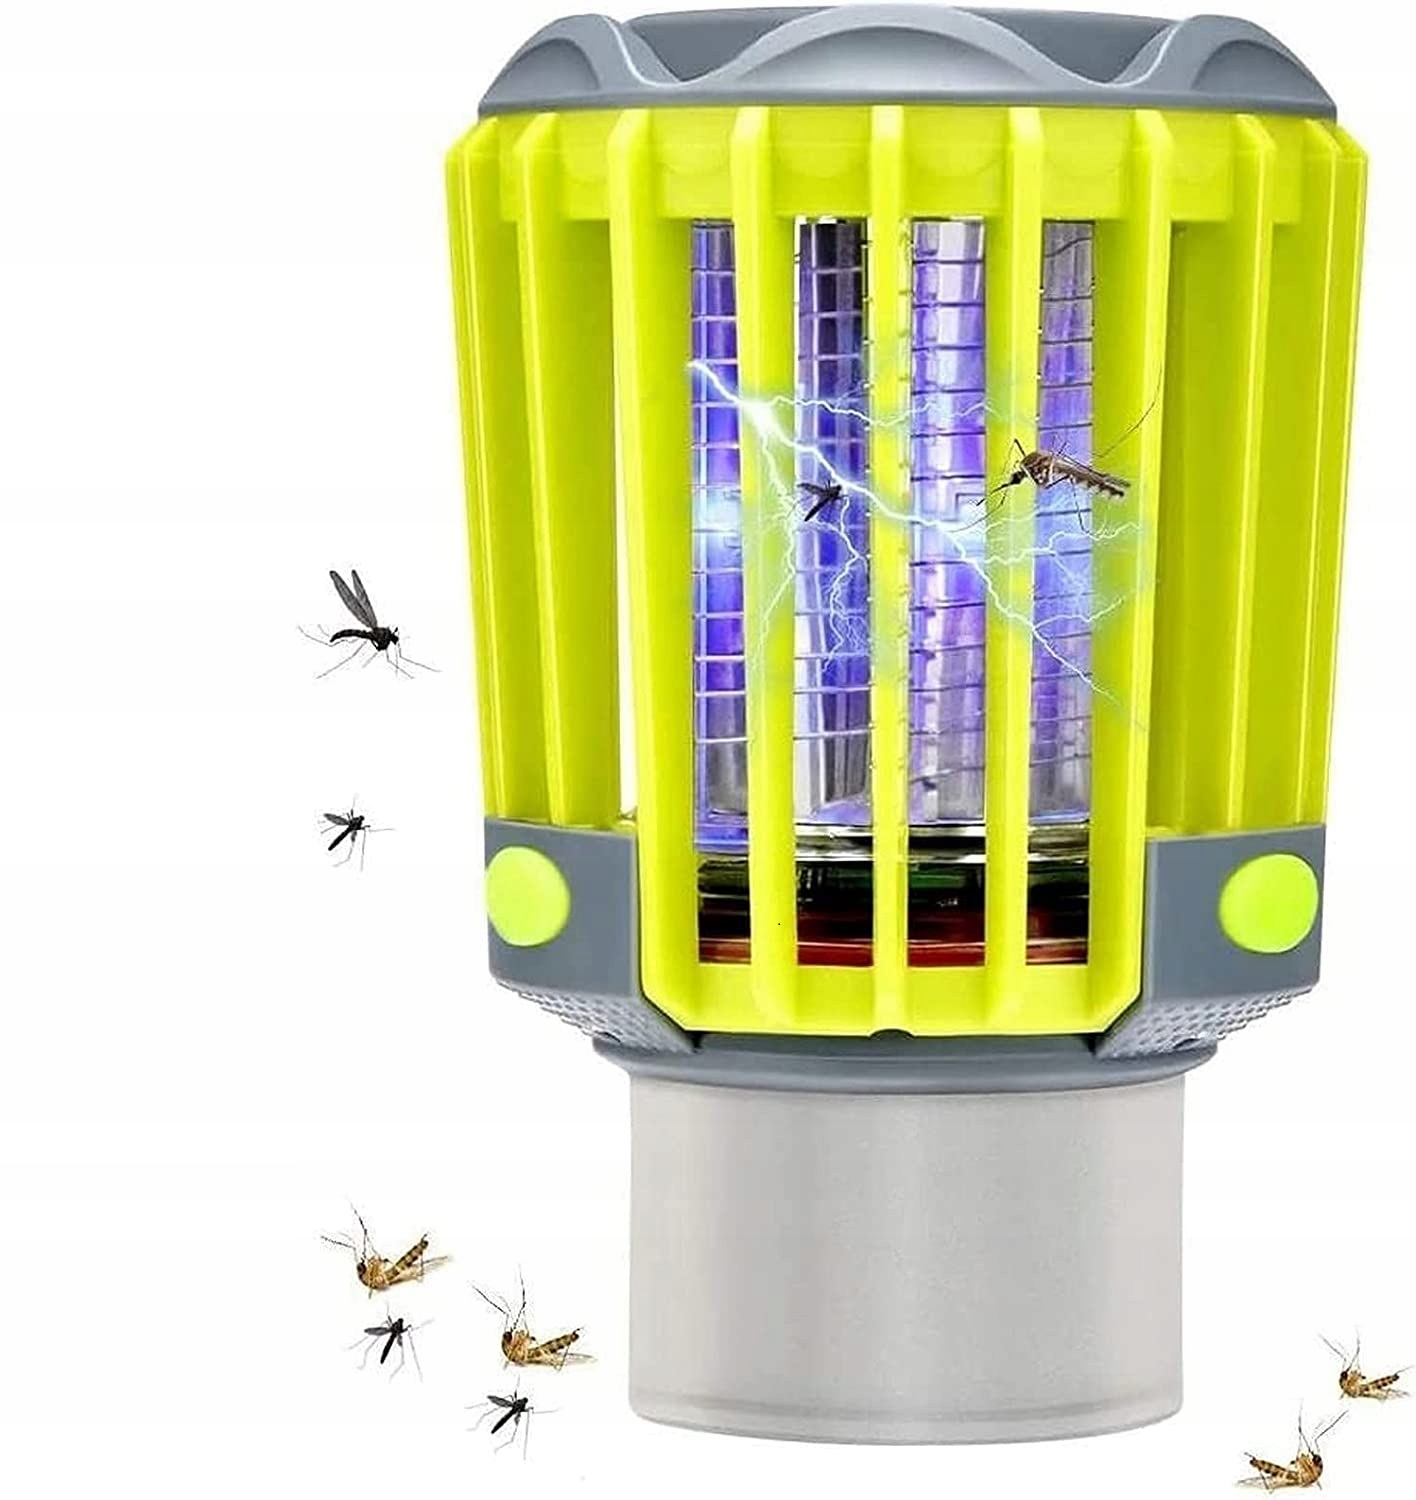 Hyönteismyrkkylamppu hyttysille Ladattava UV 3in1